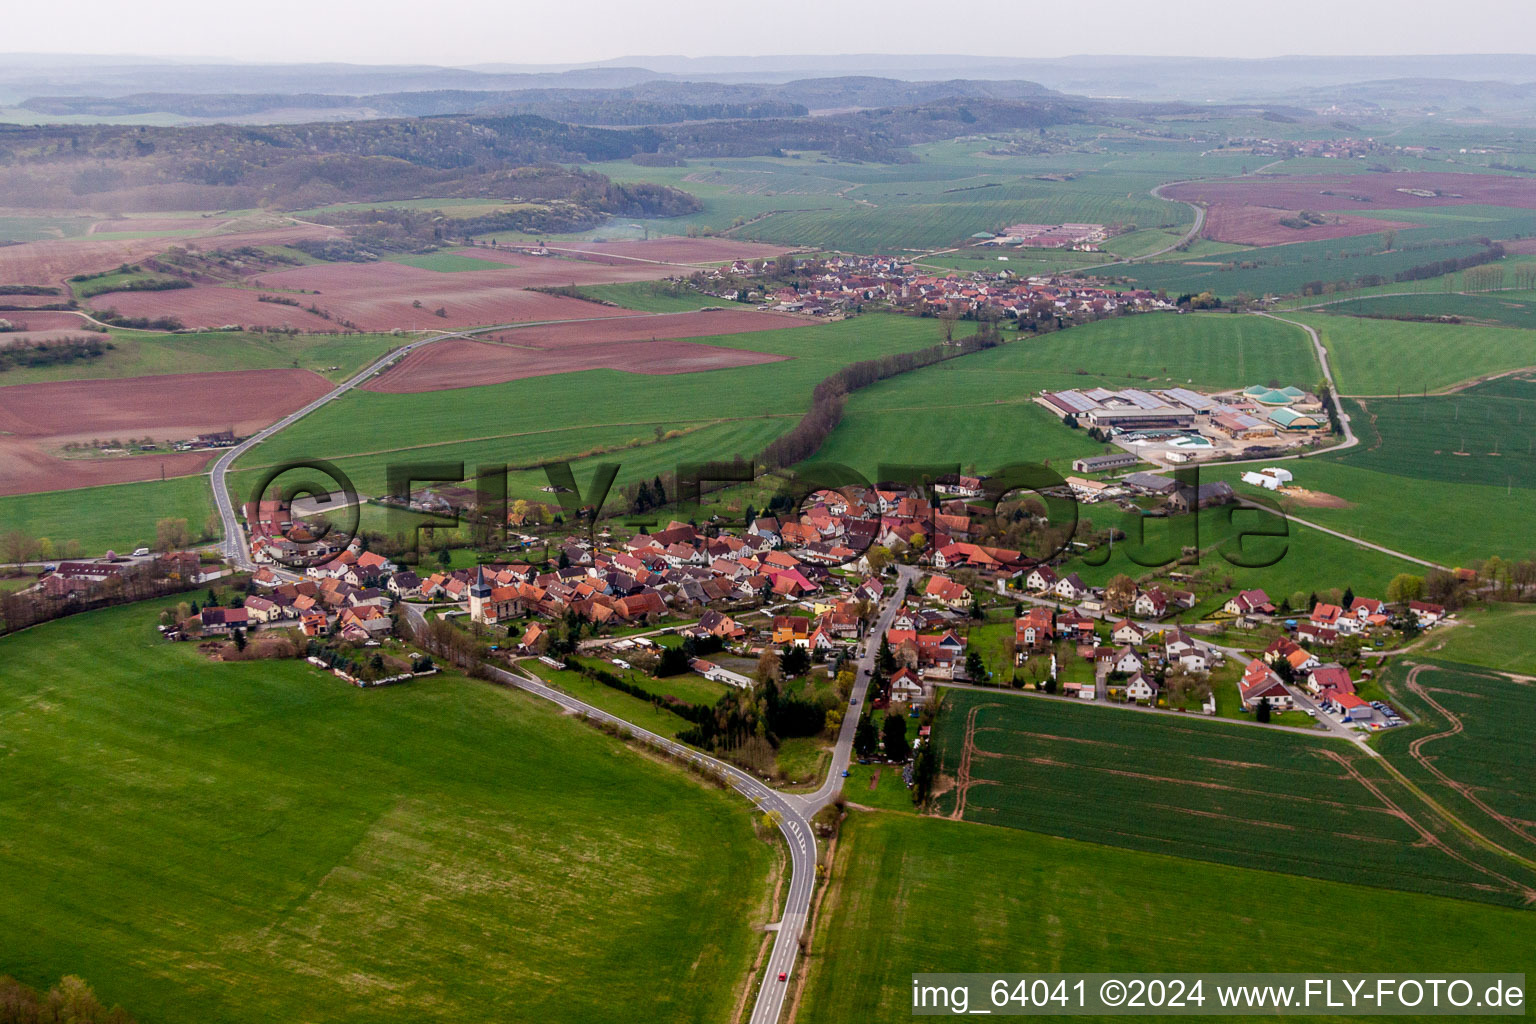 Vue aérienne de Champs agricoles et surfaces utilisables à Simmershausen dans le département Thuringe, Allemagne